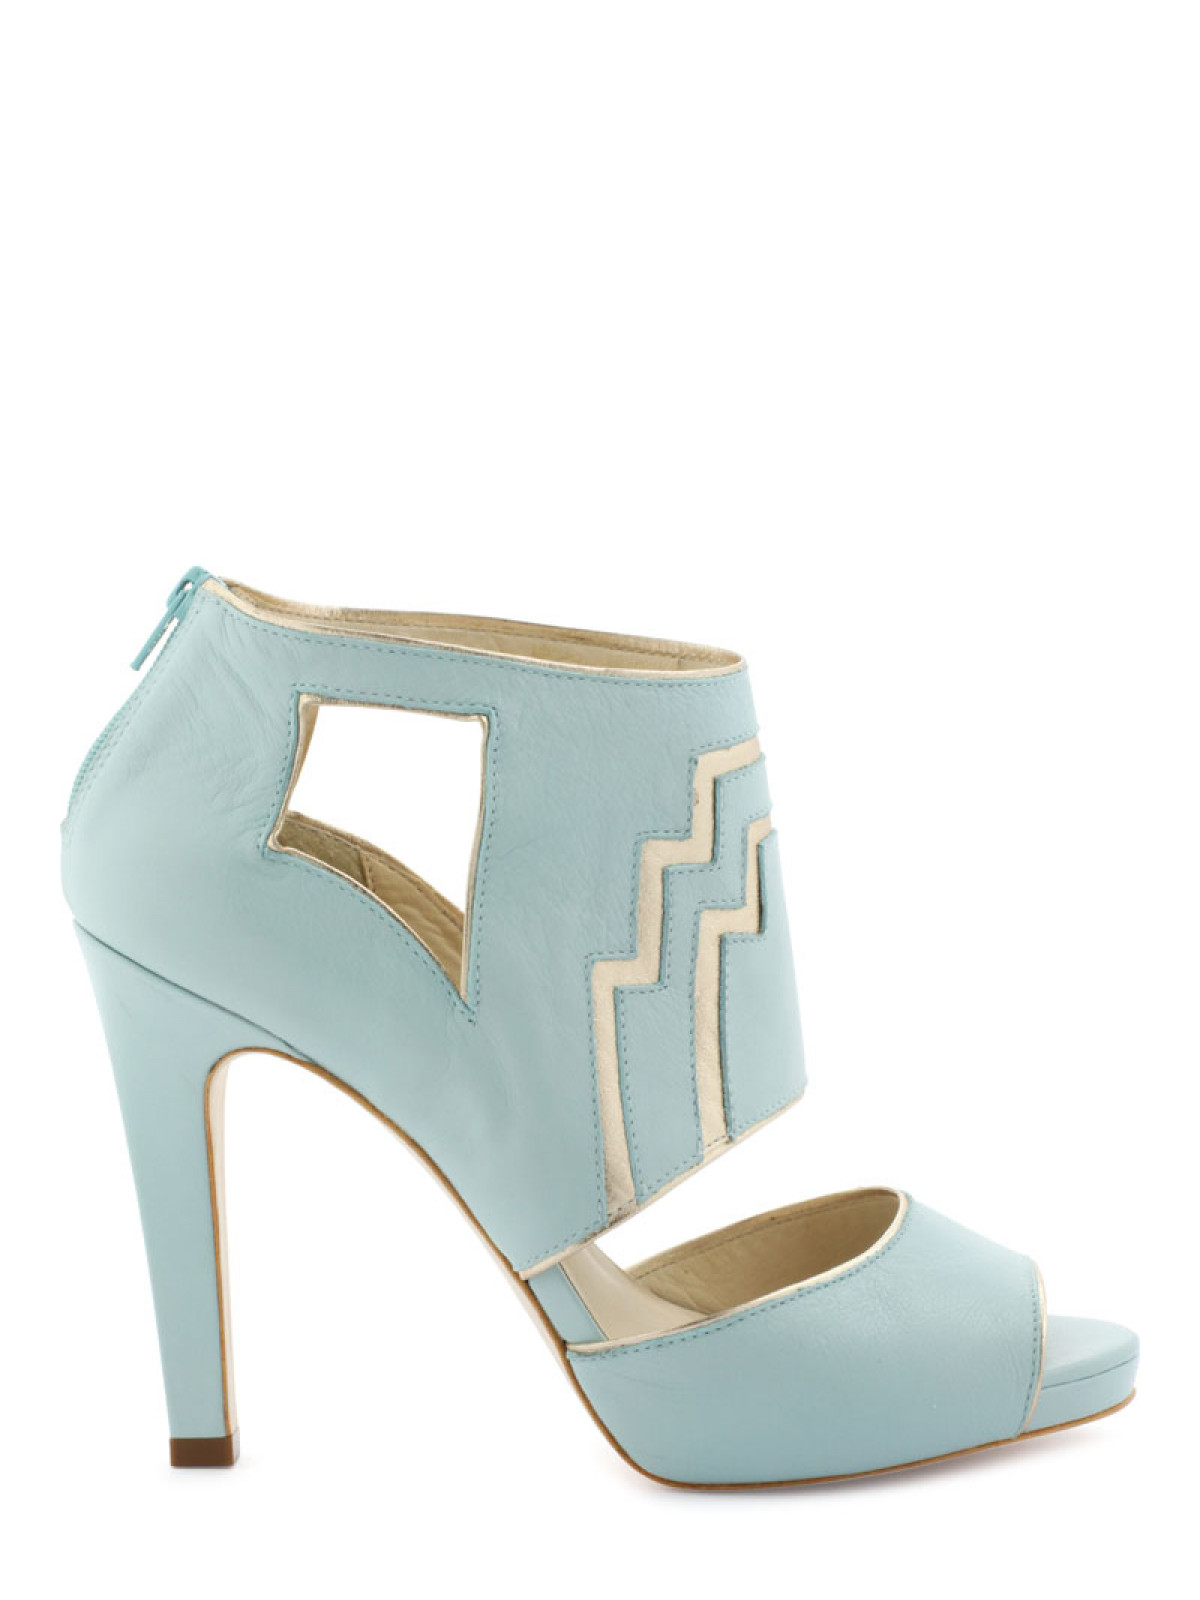 4. escarpins-ouverts-bleu-pastel-fashion-chaussures-mariee